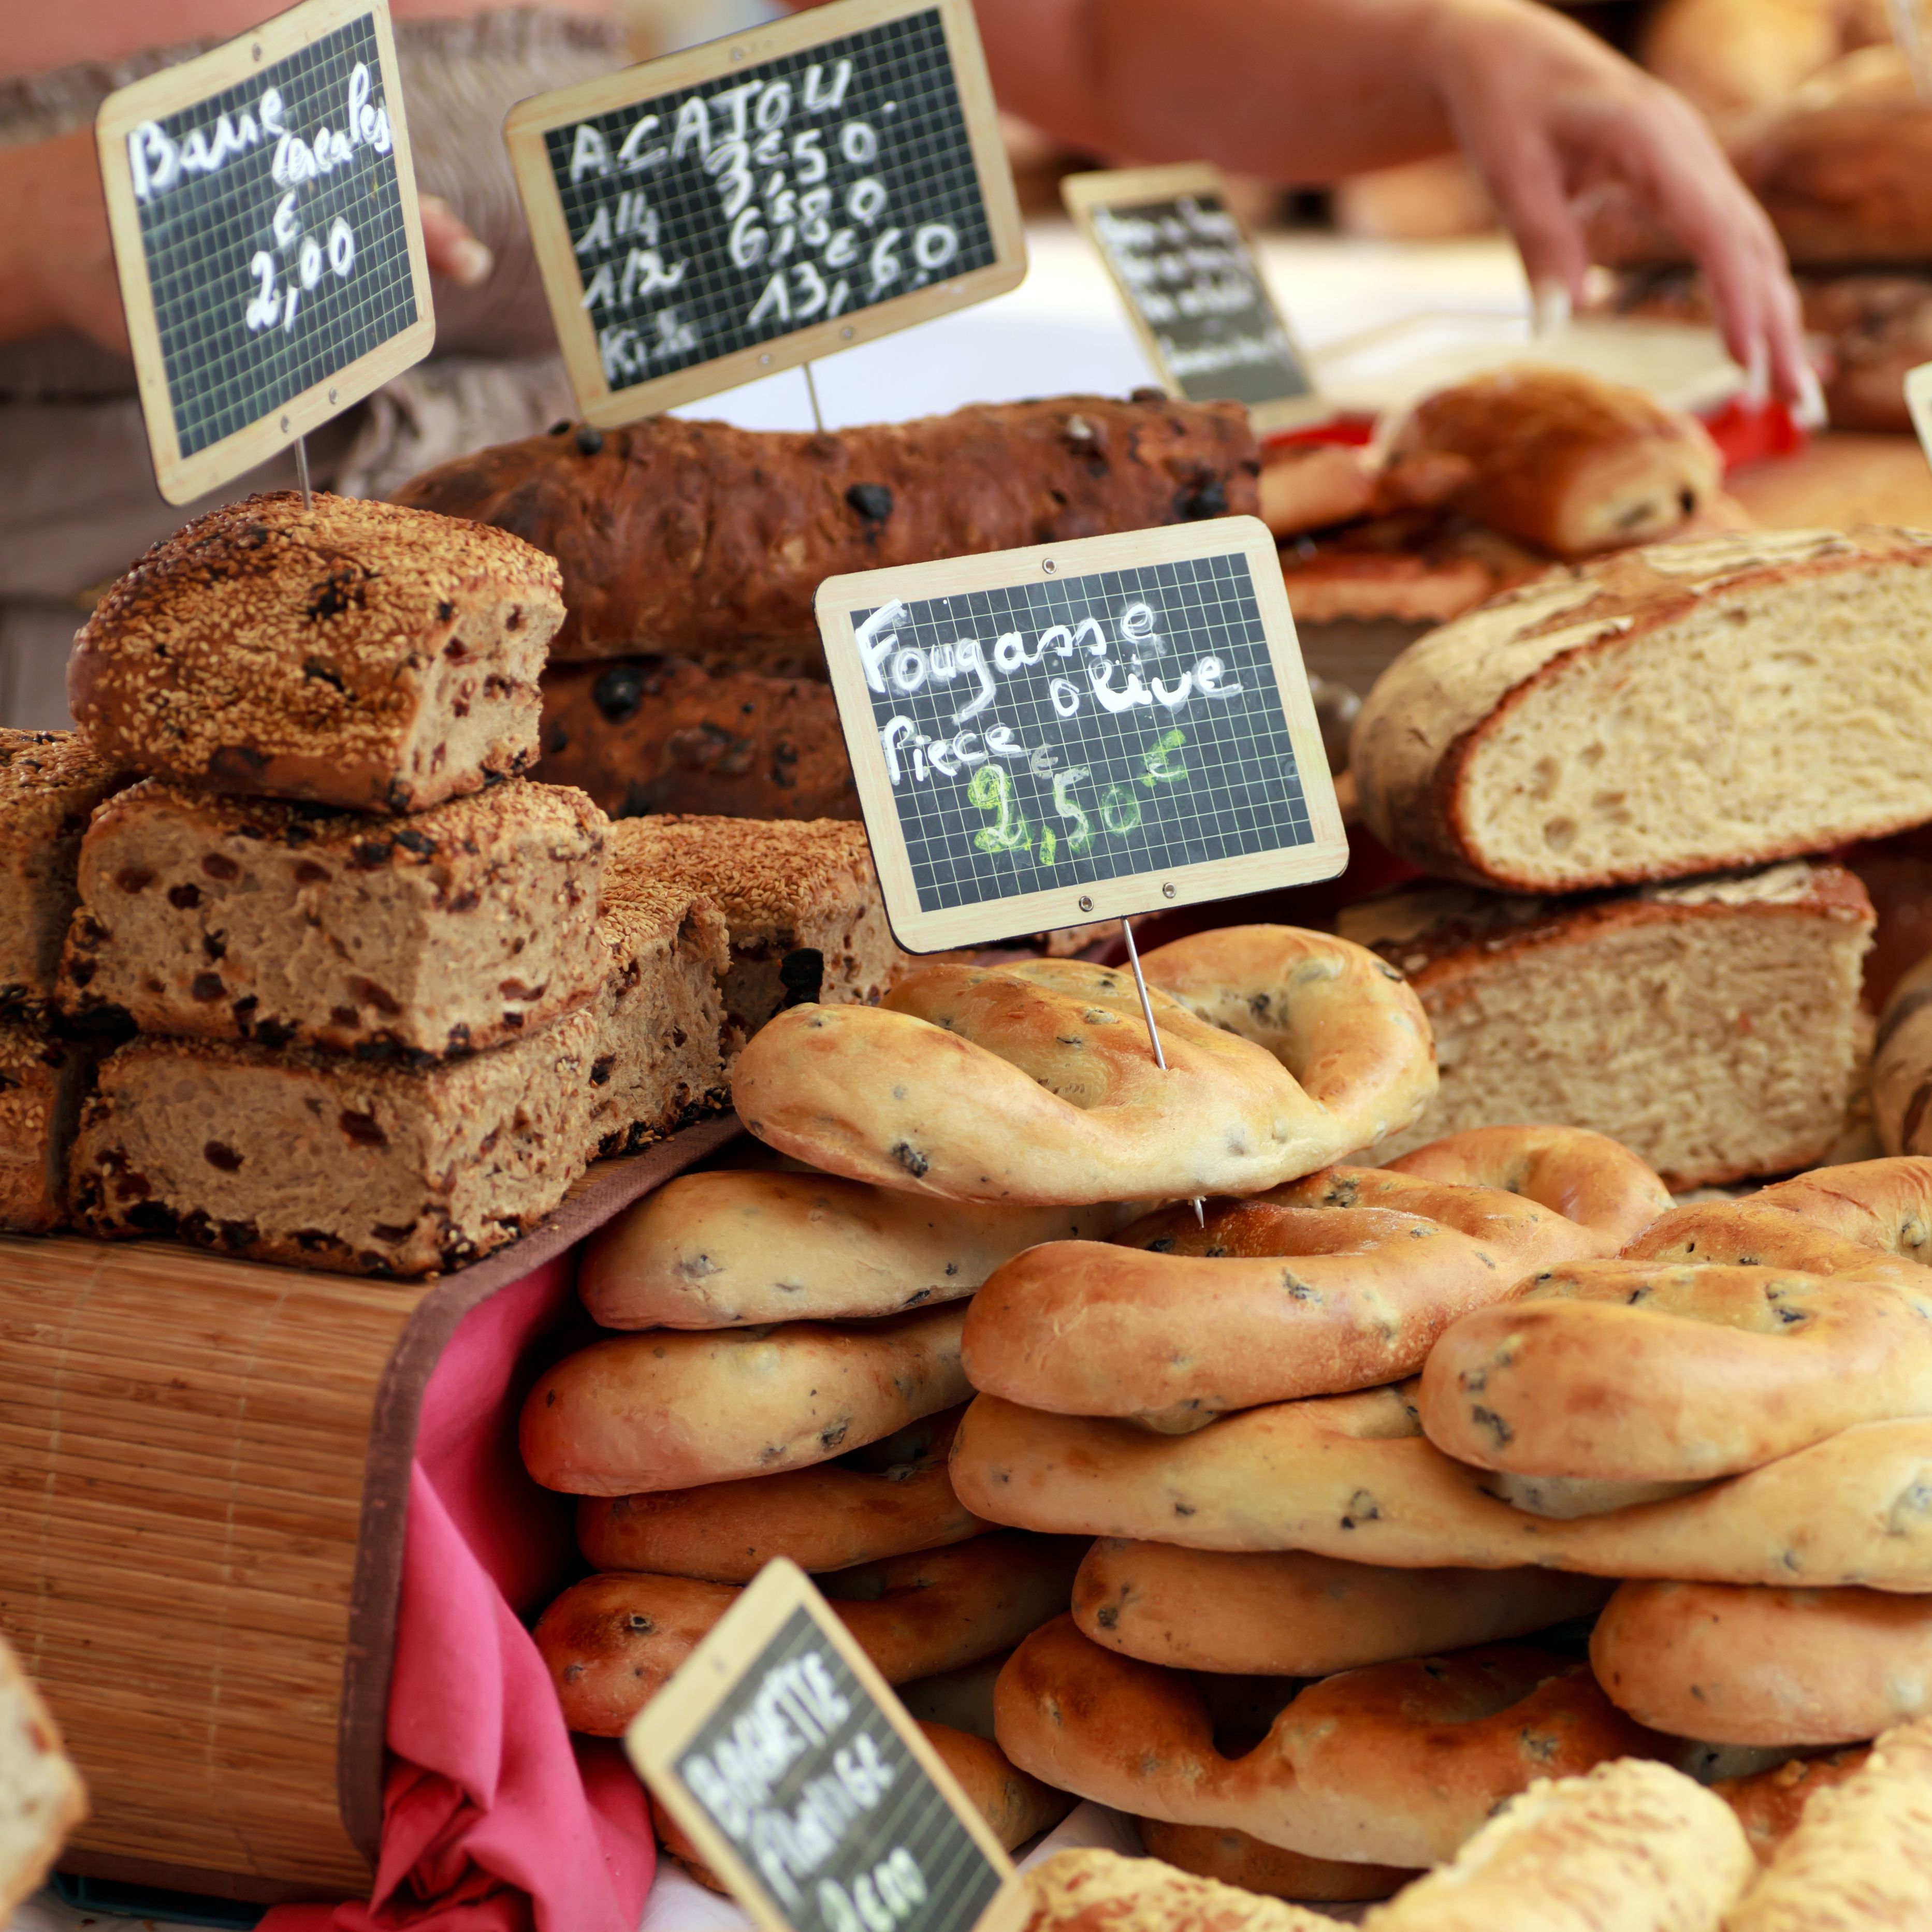 Bread at market